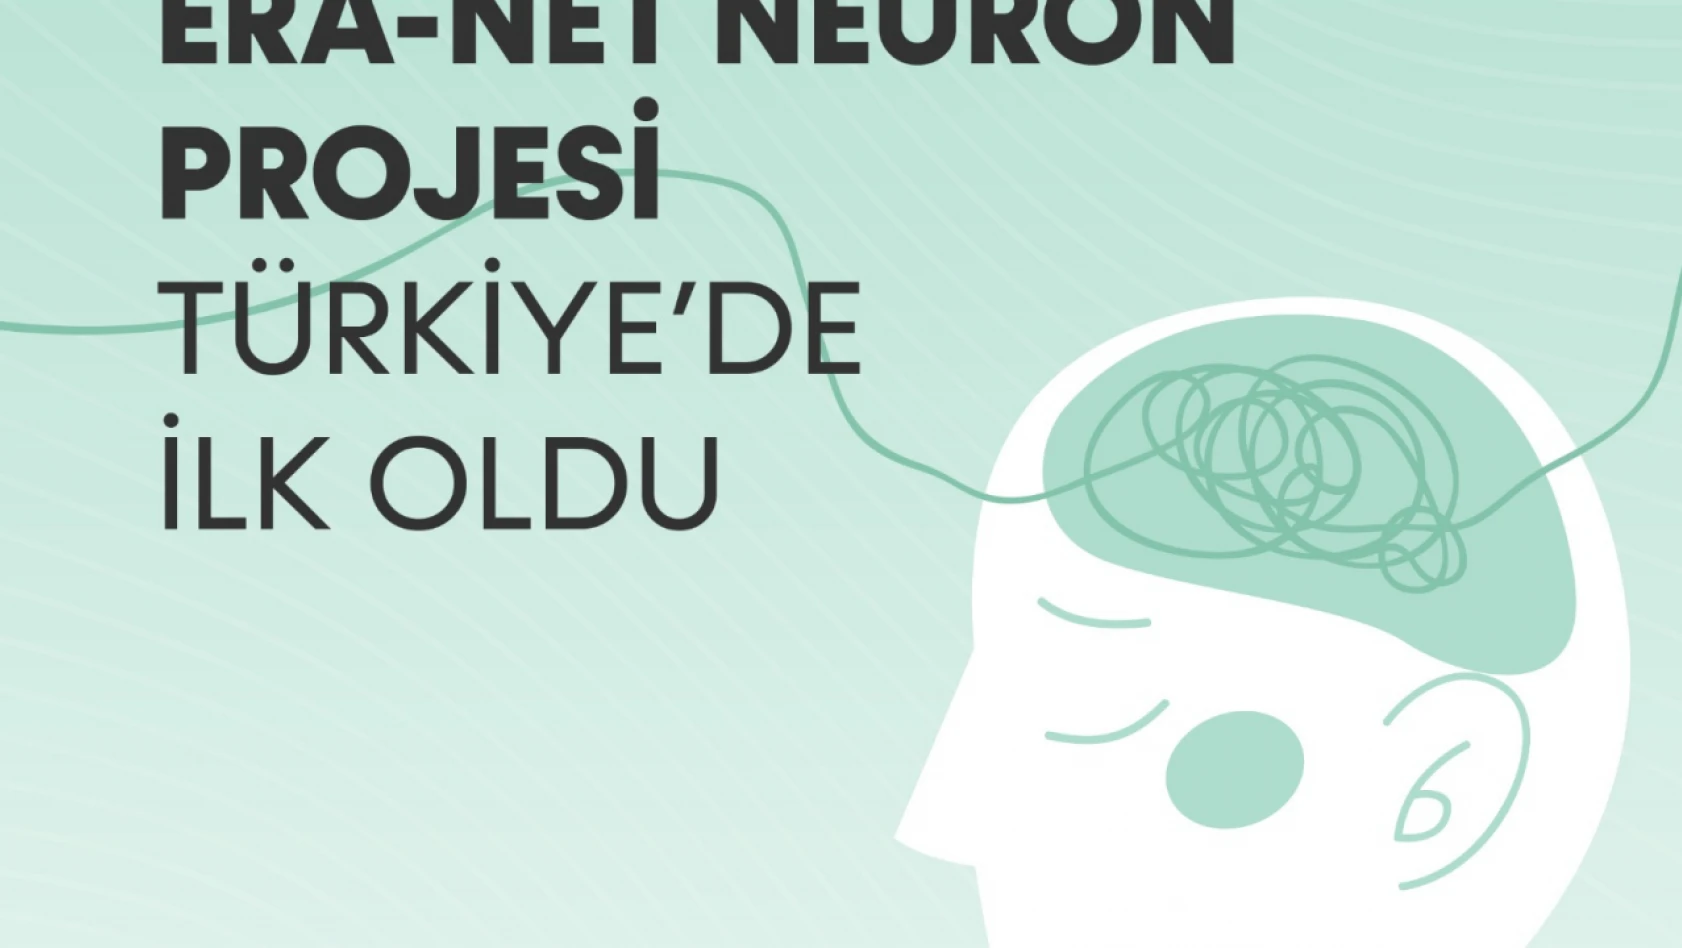 ERA-NET NEURON Türkiye'de ilk!